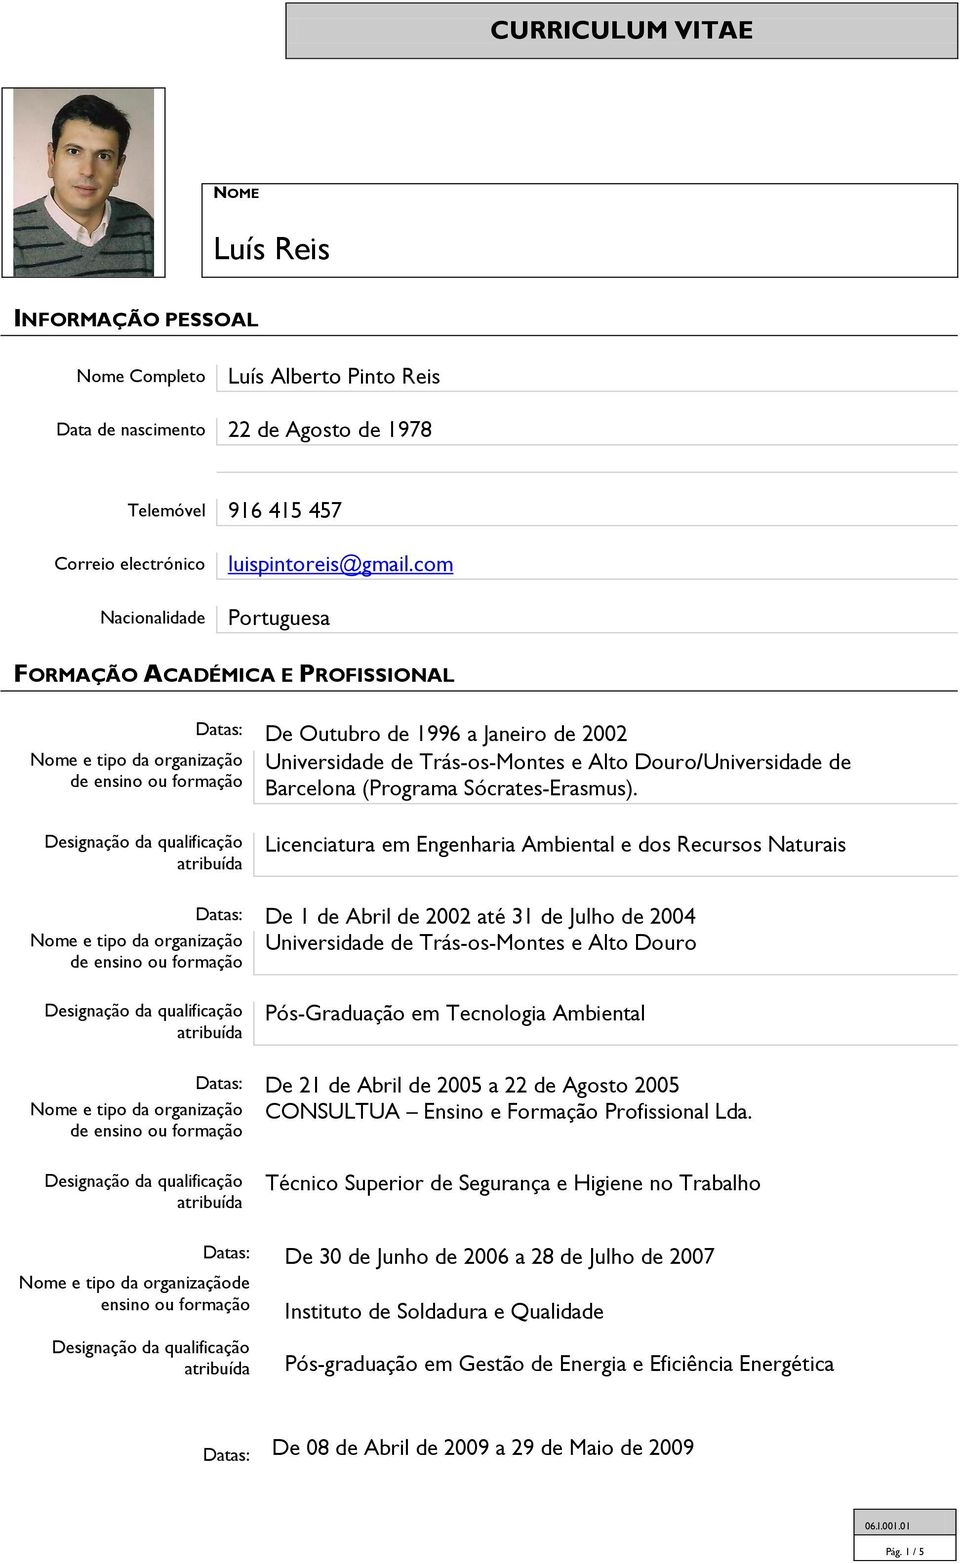 Licenciatura em Engenharia Ambiental e dos Recursos Naturais Datas: De 1 de Abril de 2002 até 31 de Julho de 2004 Universidade de Trás-os-Montes e Alto Douro Pós-Graduação em Tecnologia Ambiental